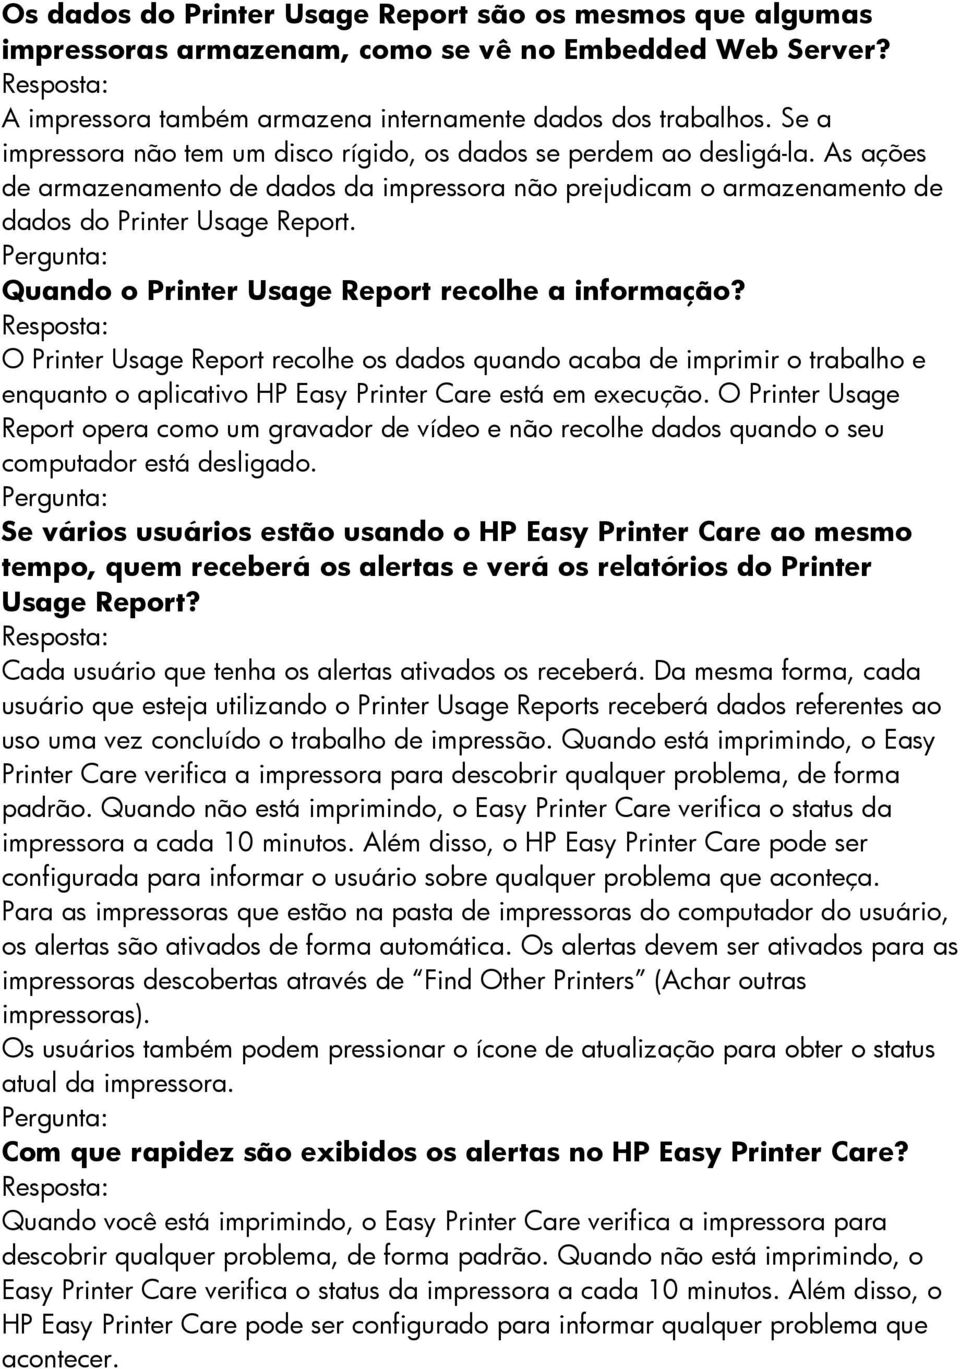 Quando o Printer Usage Report recolhe a informação? O Printer Usage Report recolhe os dados quando acaba de imprimir o trabalho e enquanto o aplicativo HP Easy Printer Care está em execução.